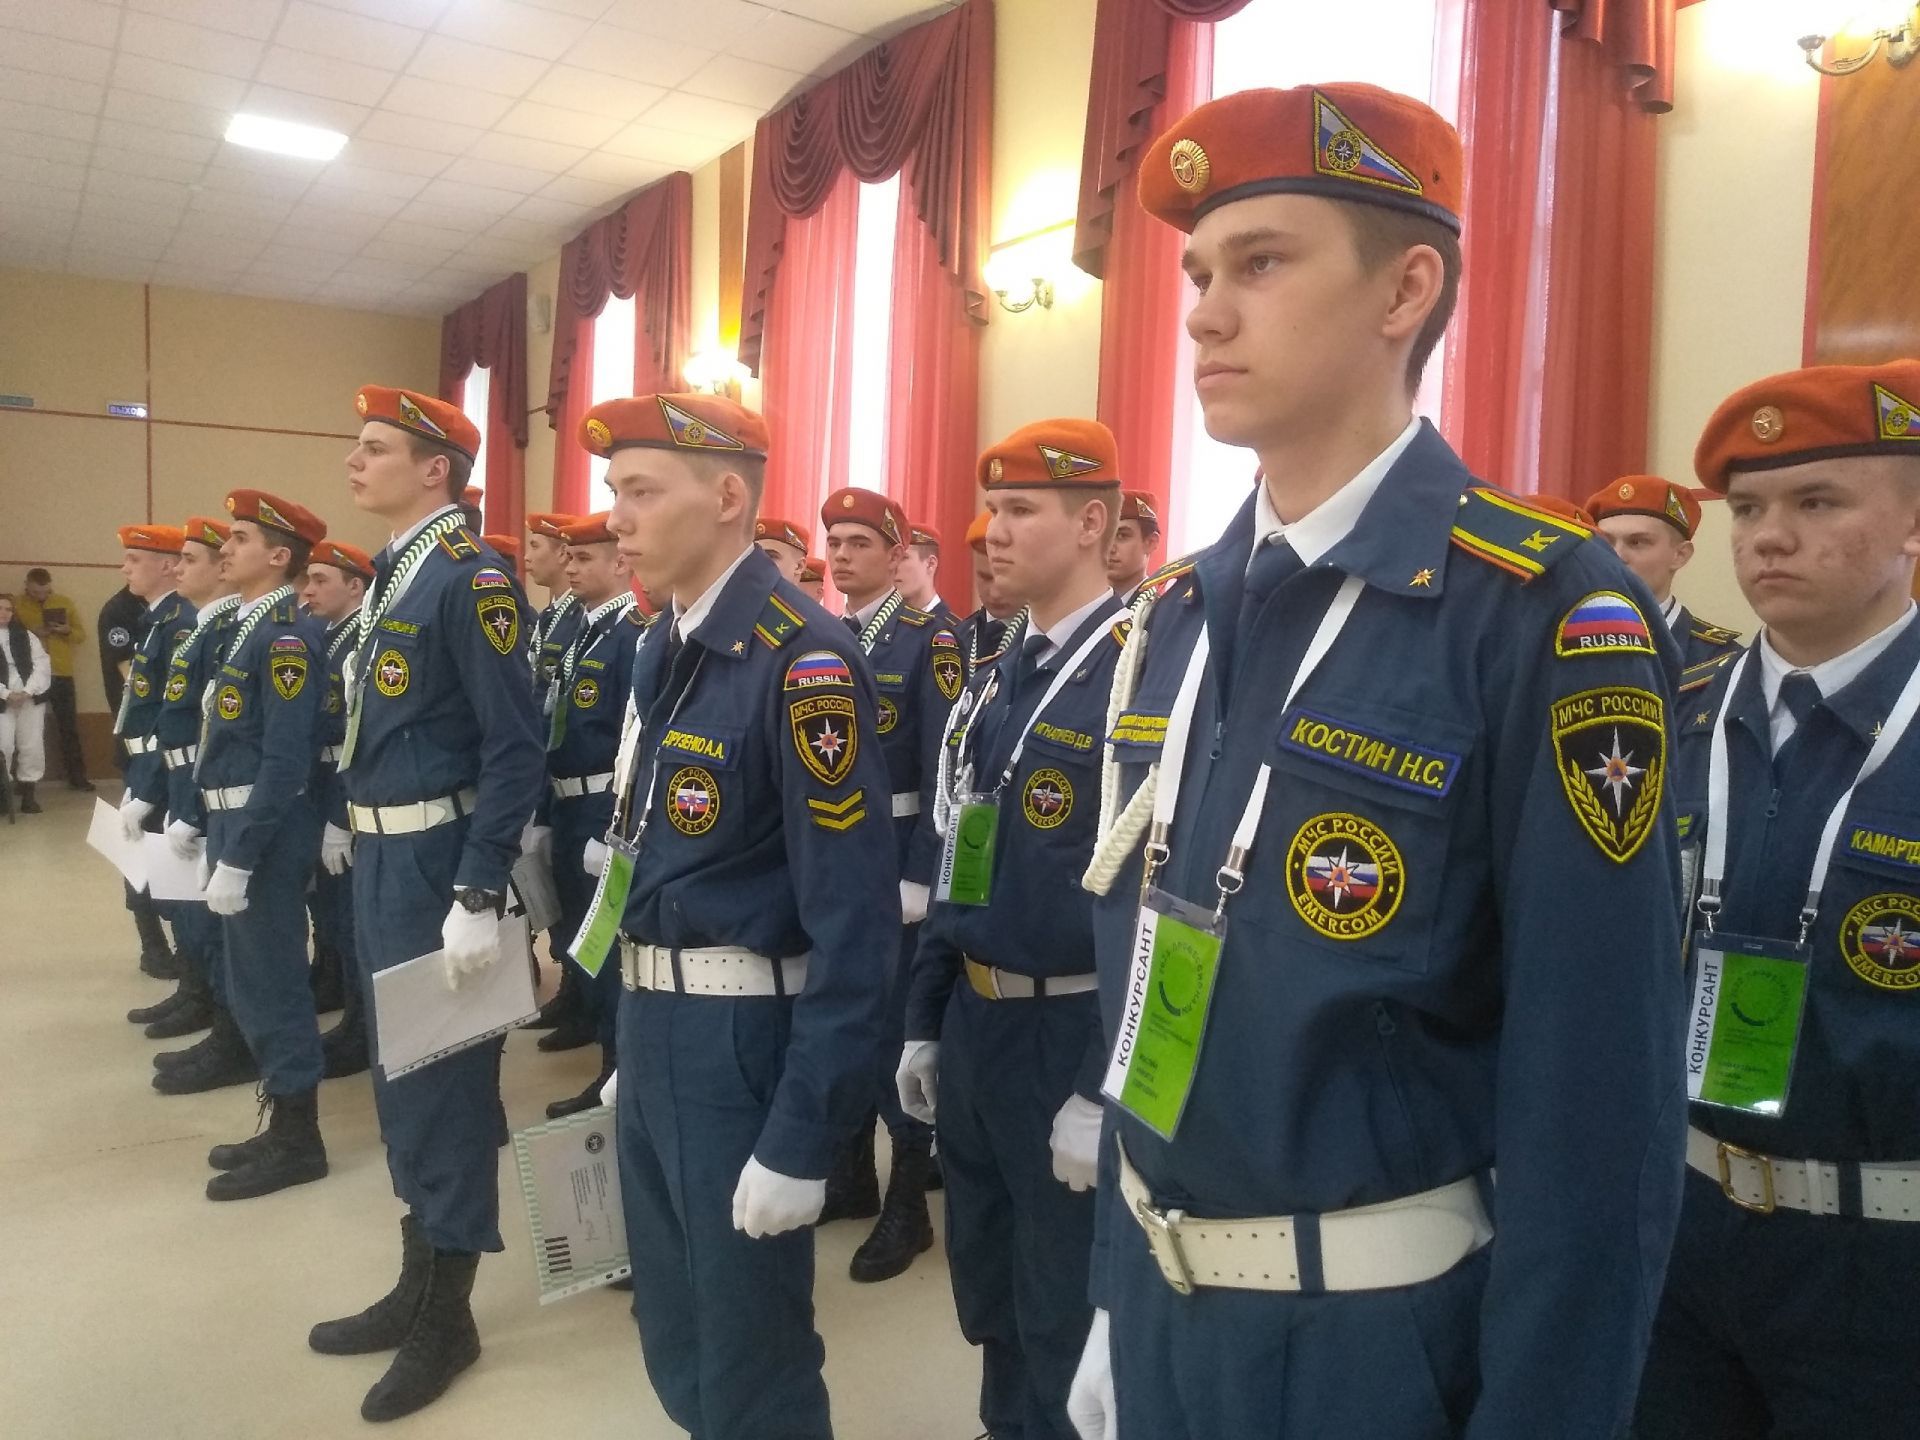 В Тетюшах прошло закрытие регионального чемпионата профмастерства по компетенции «Пожарная безопасность»